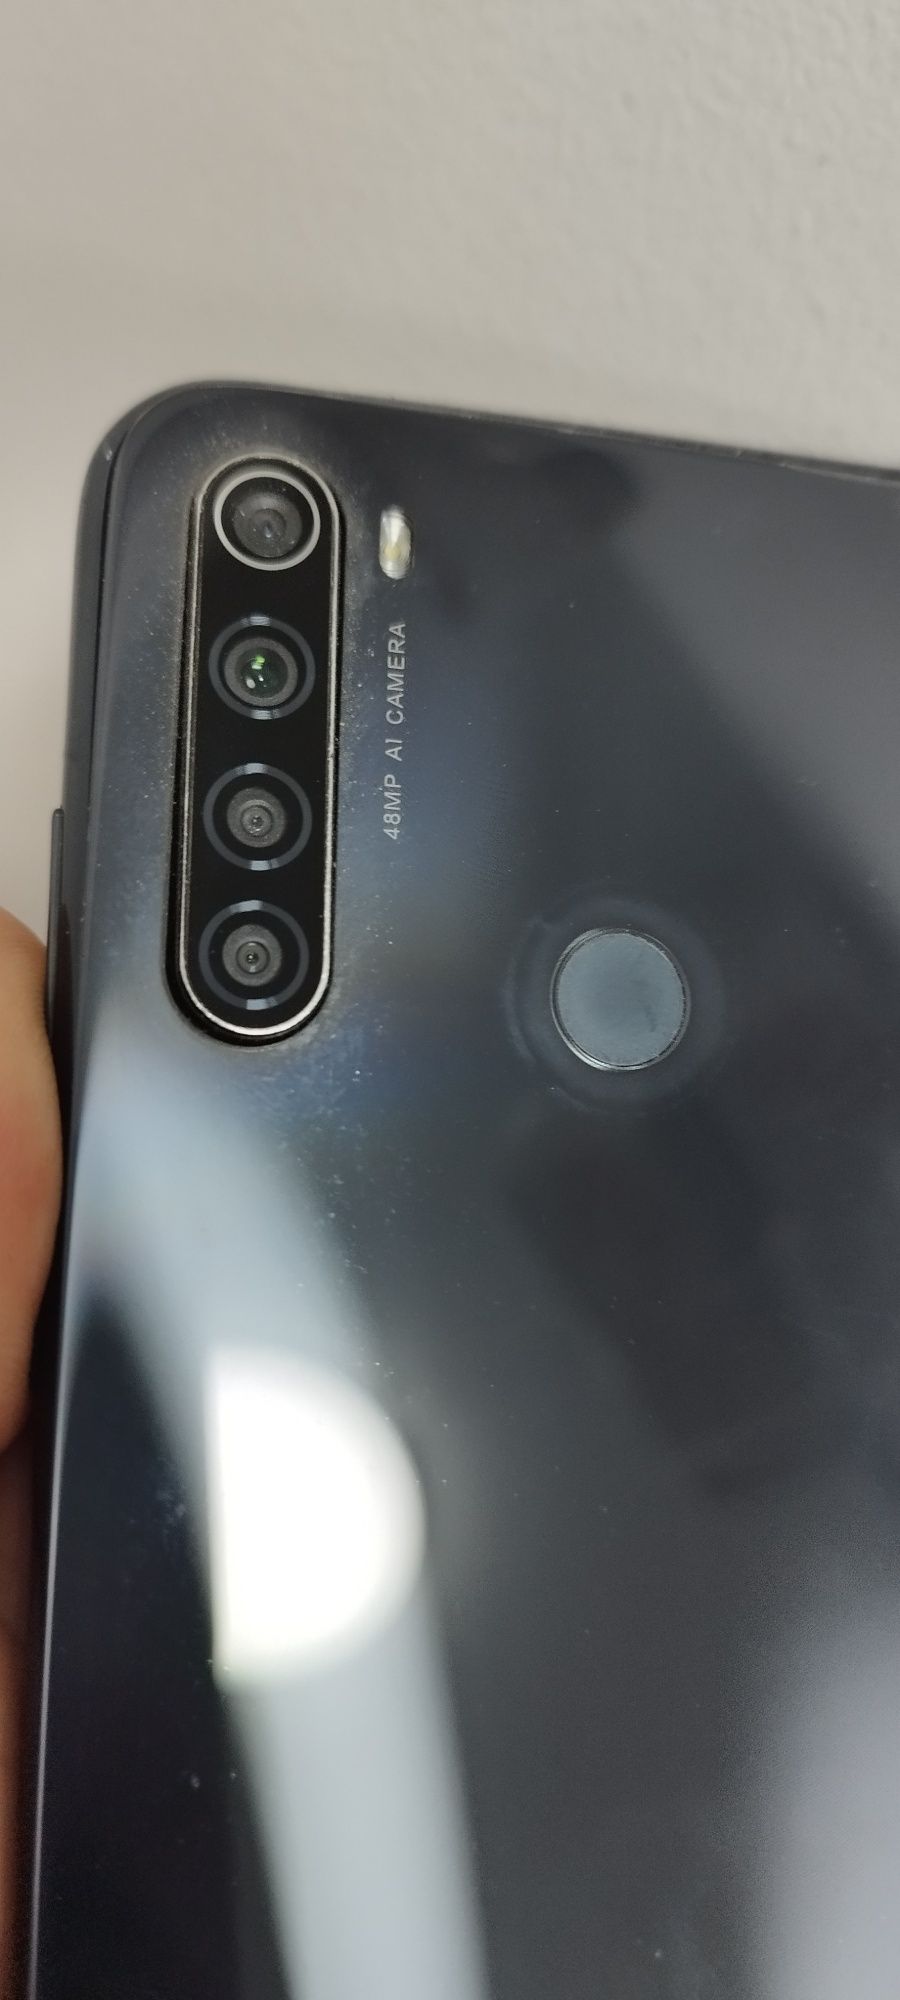 Xiaomi Redmi note 8t nfc 4/64 на запчасти

На запчасти,не работает вай